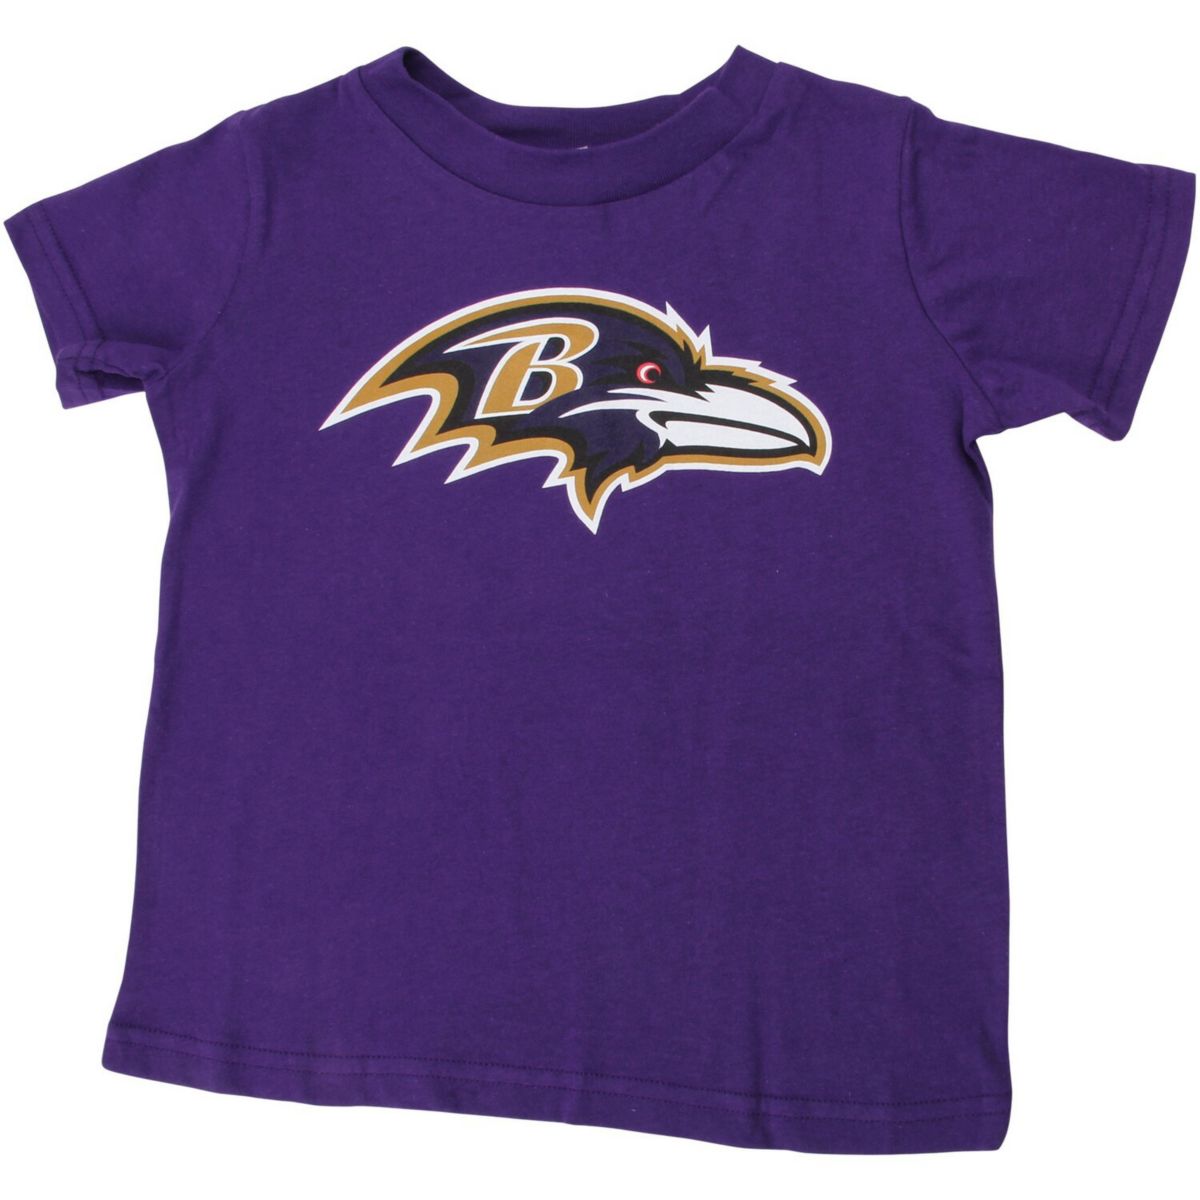 Купить Футболки Фиолетовая футболка с логотипом команды для малышей ...